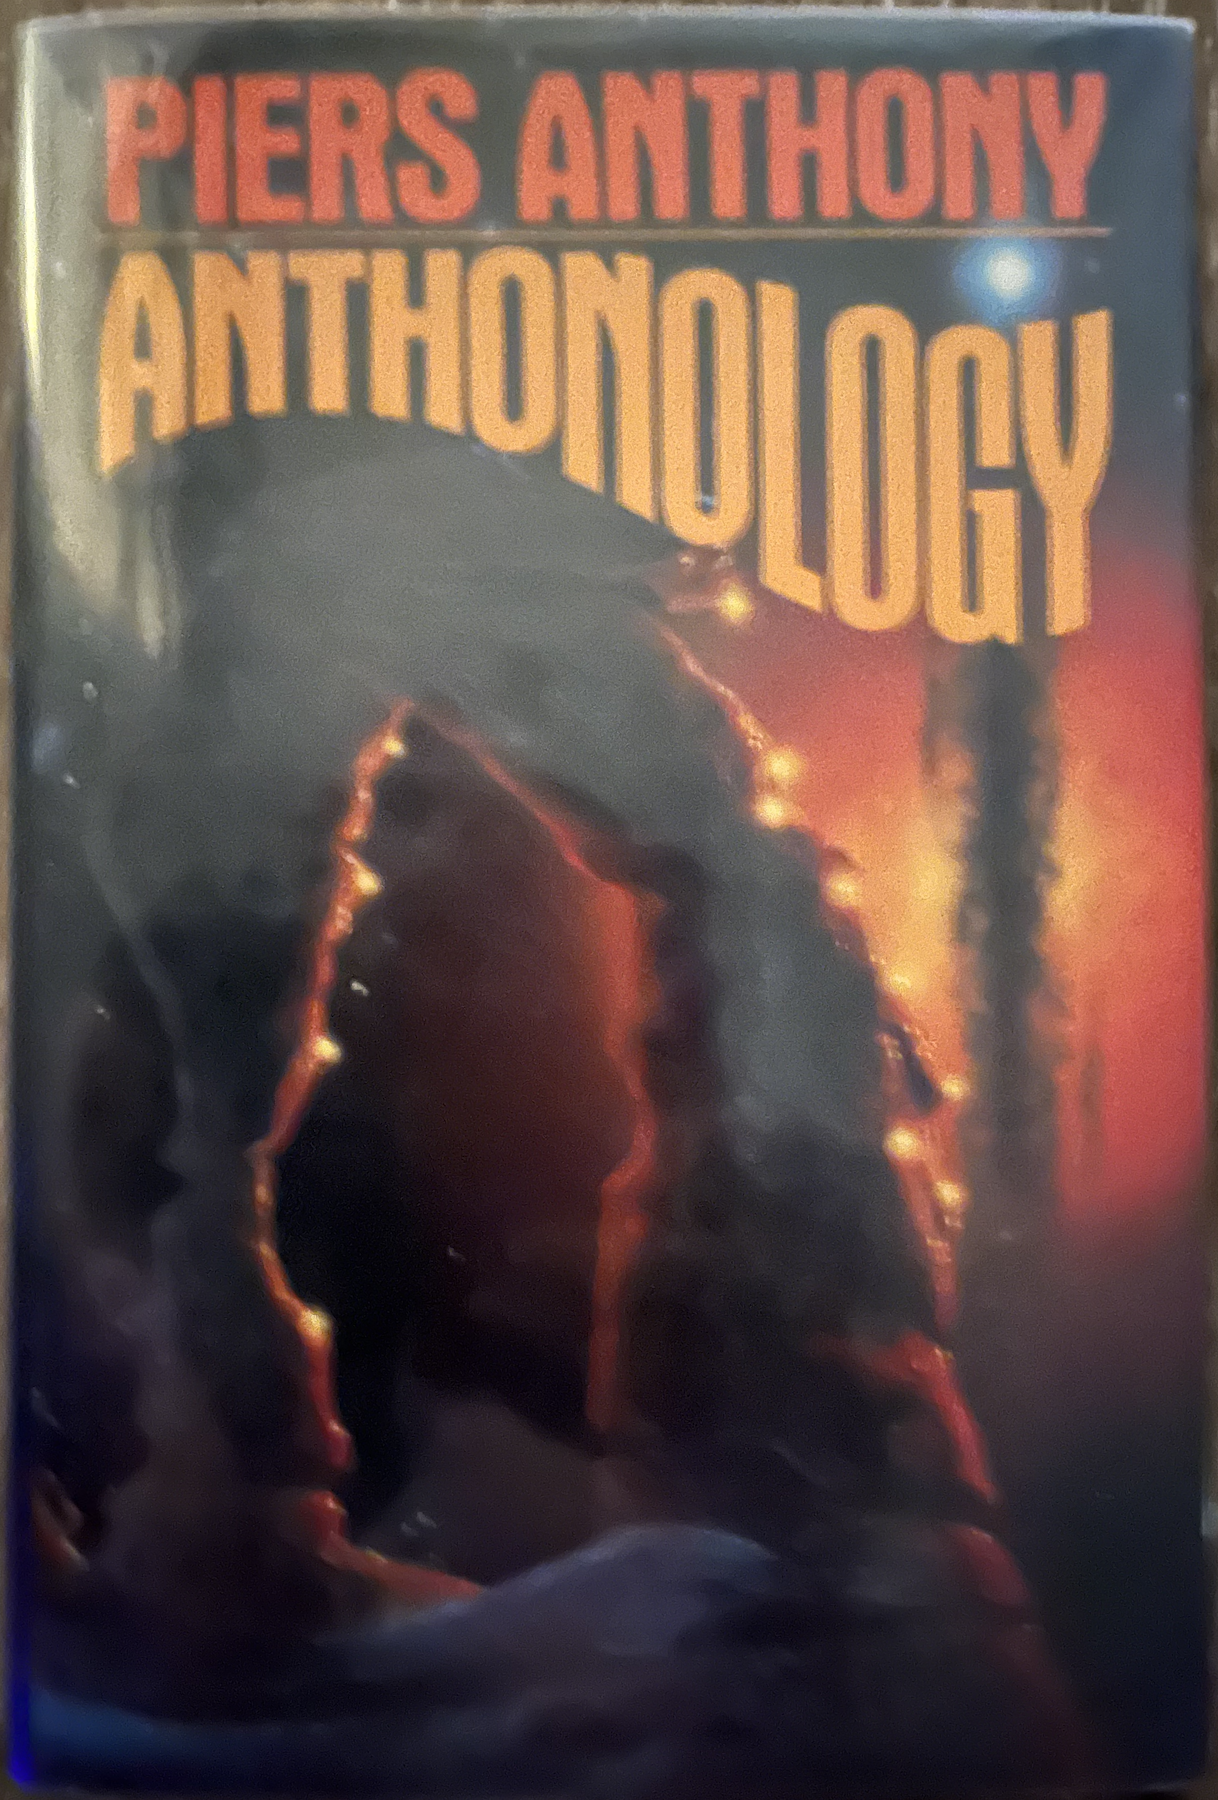 Anthonology hardback cover